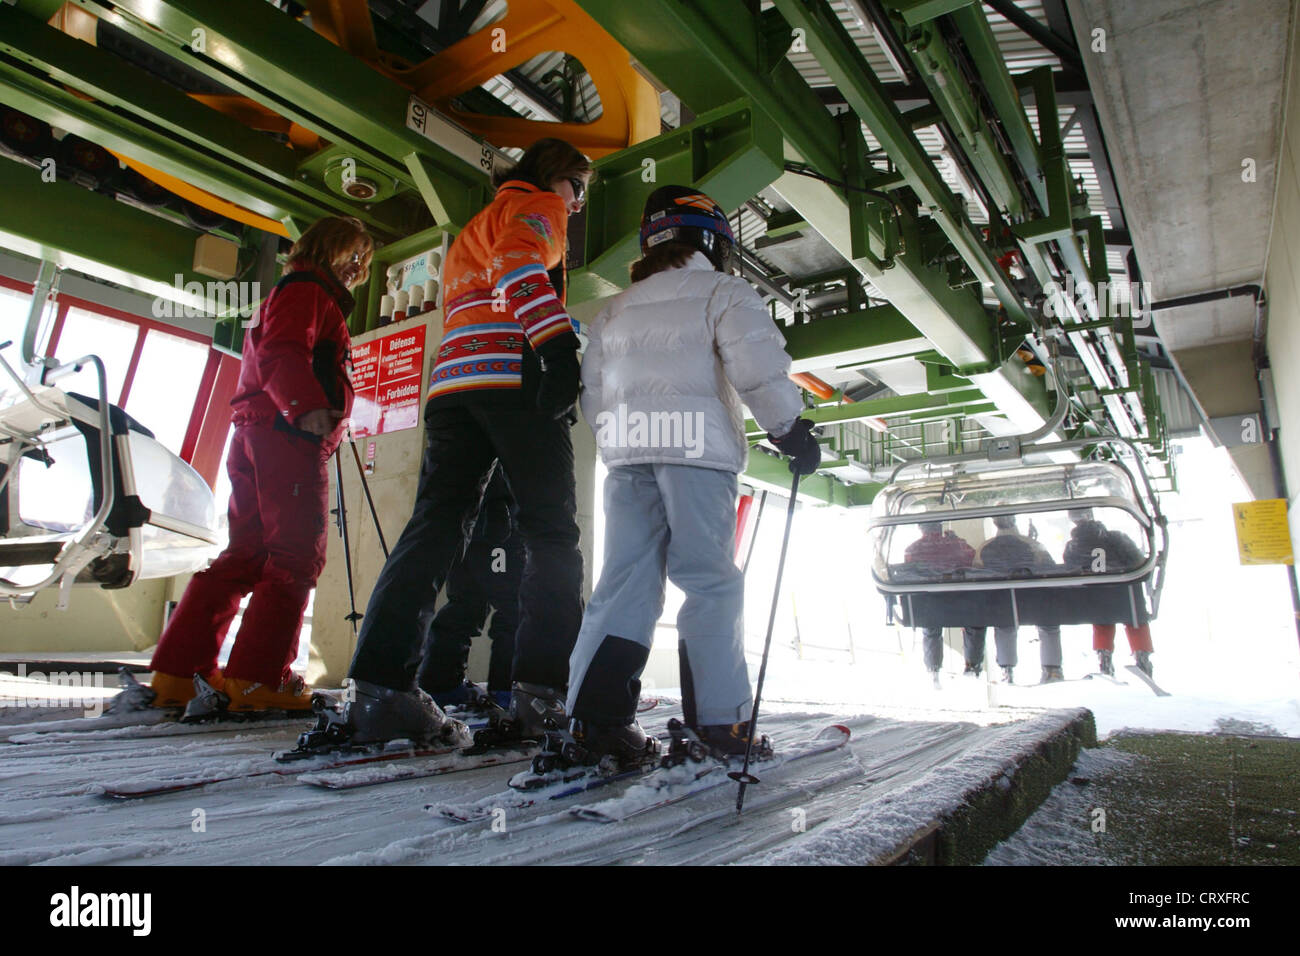 Les skieurs d'attendre un téléphérique gondola Banque D'Images